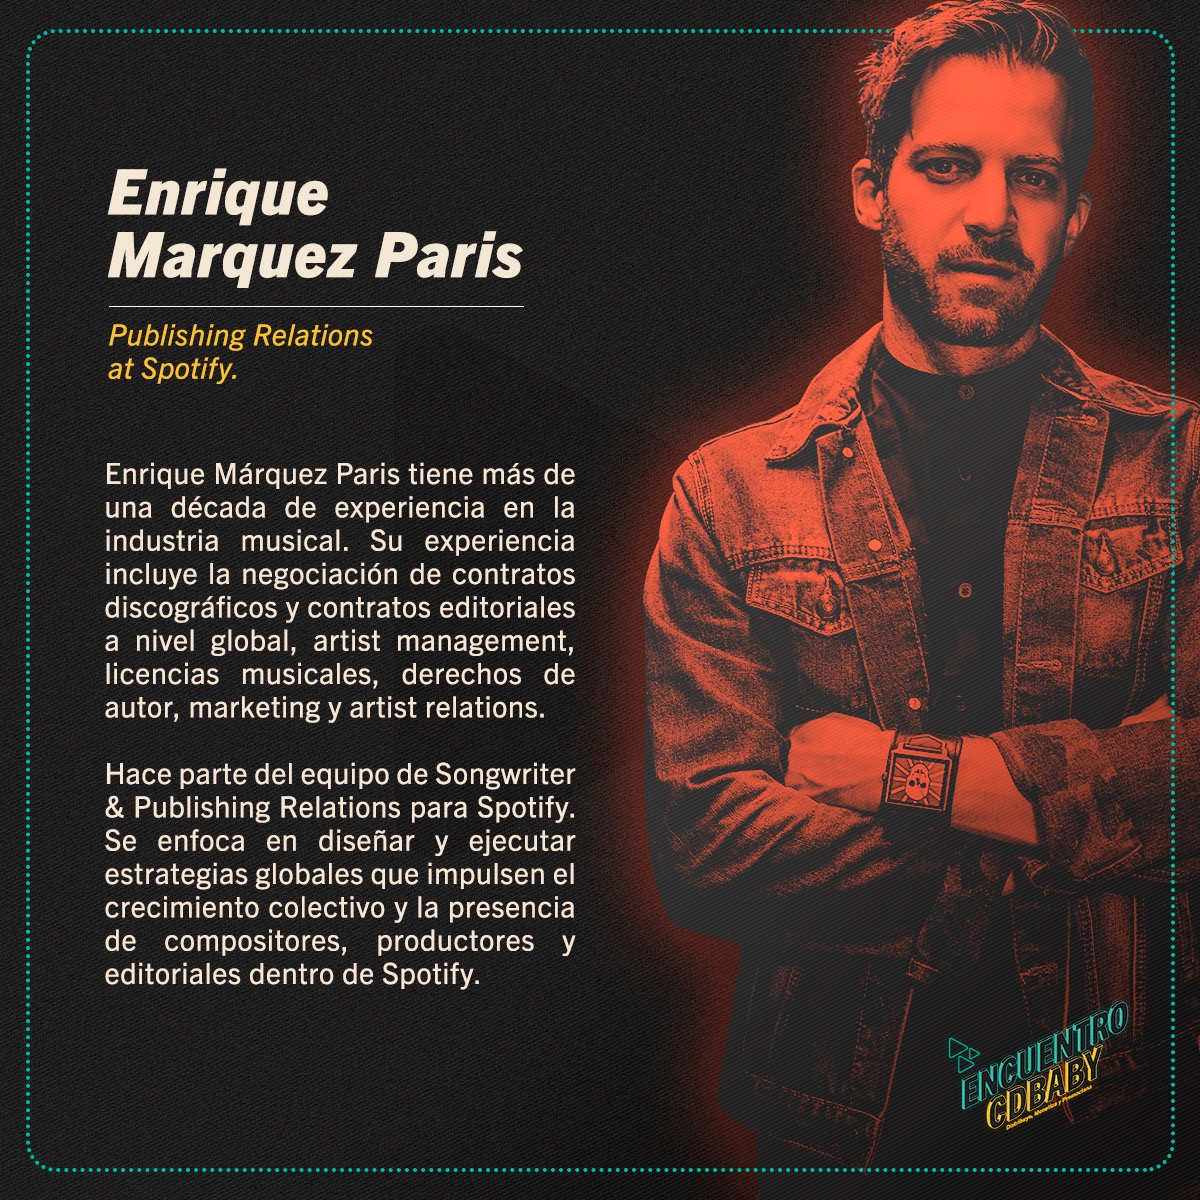 Enrique Marquez Paris